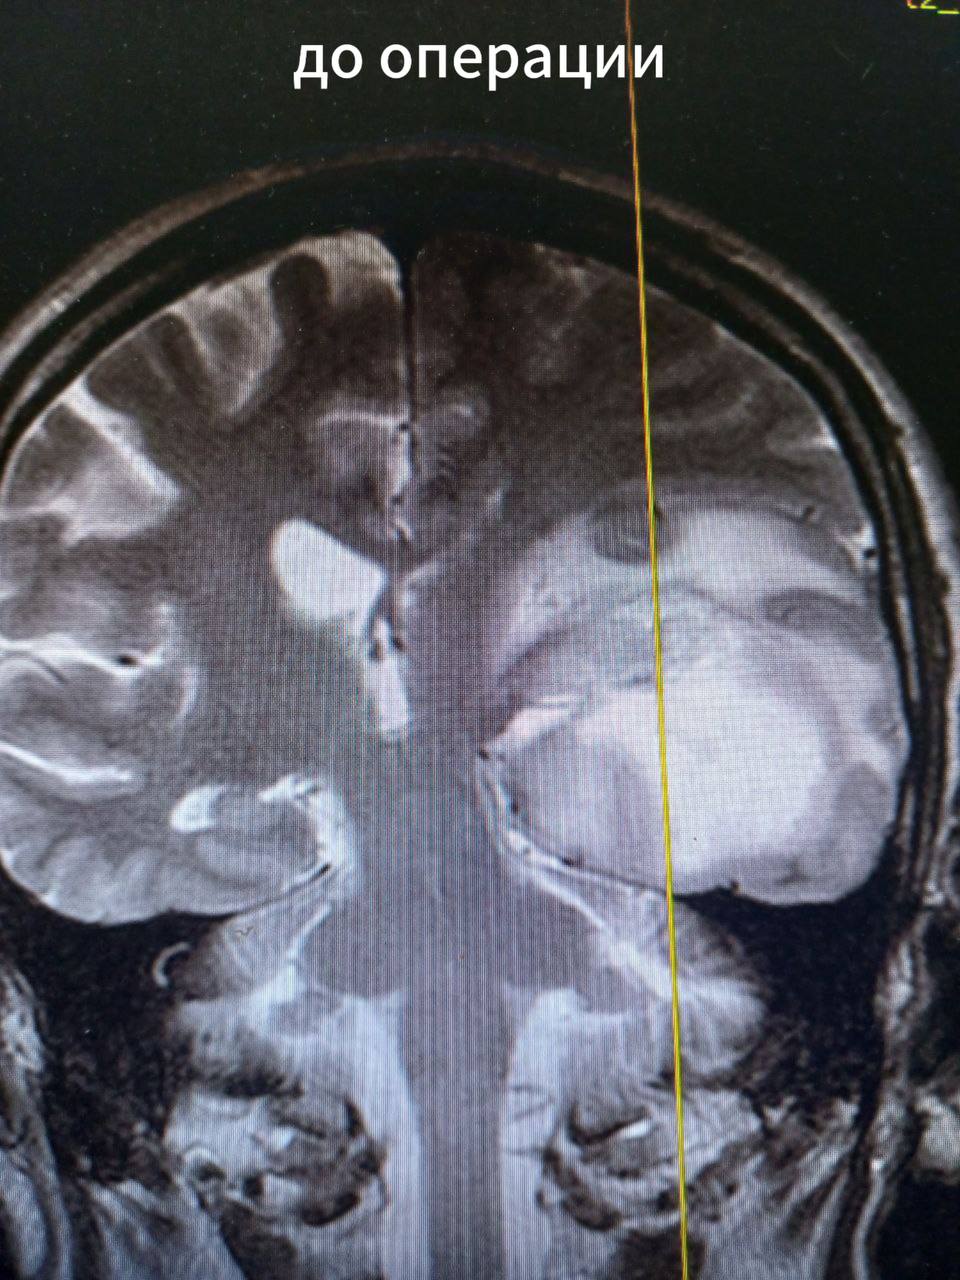 Мелитопольские врачи удалили пациенту крупную опухоль головного мозга